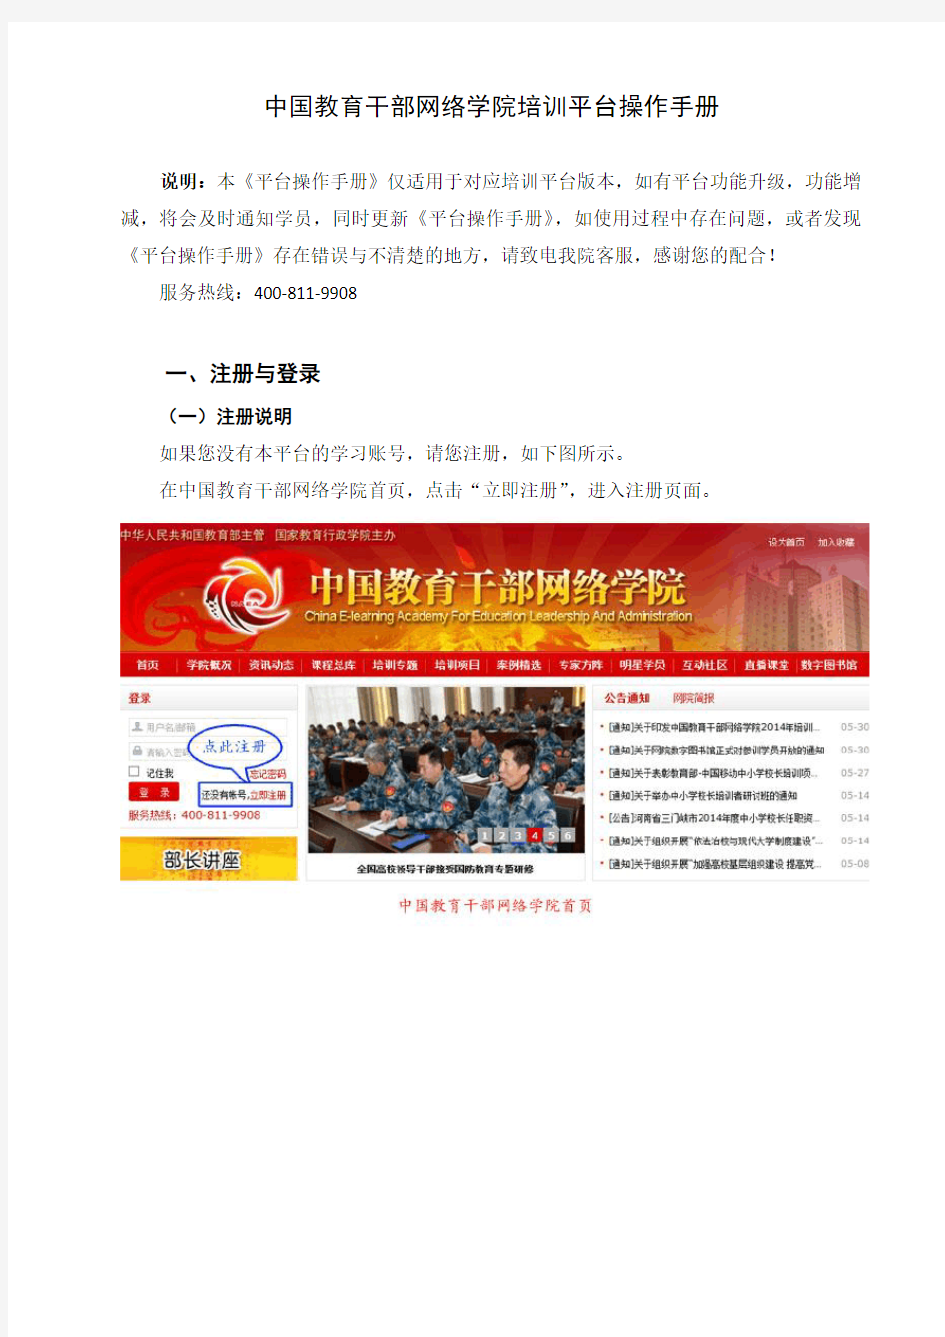 中国教育干部网络学院培训平台操作手册20141015